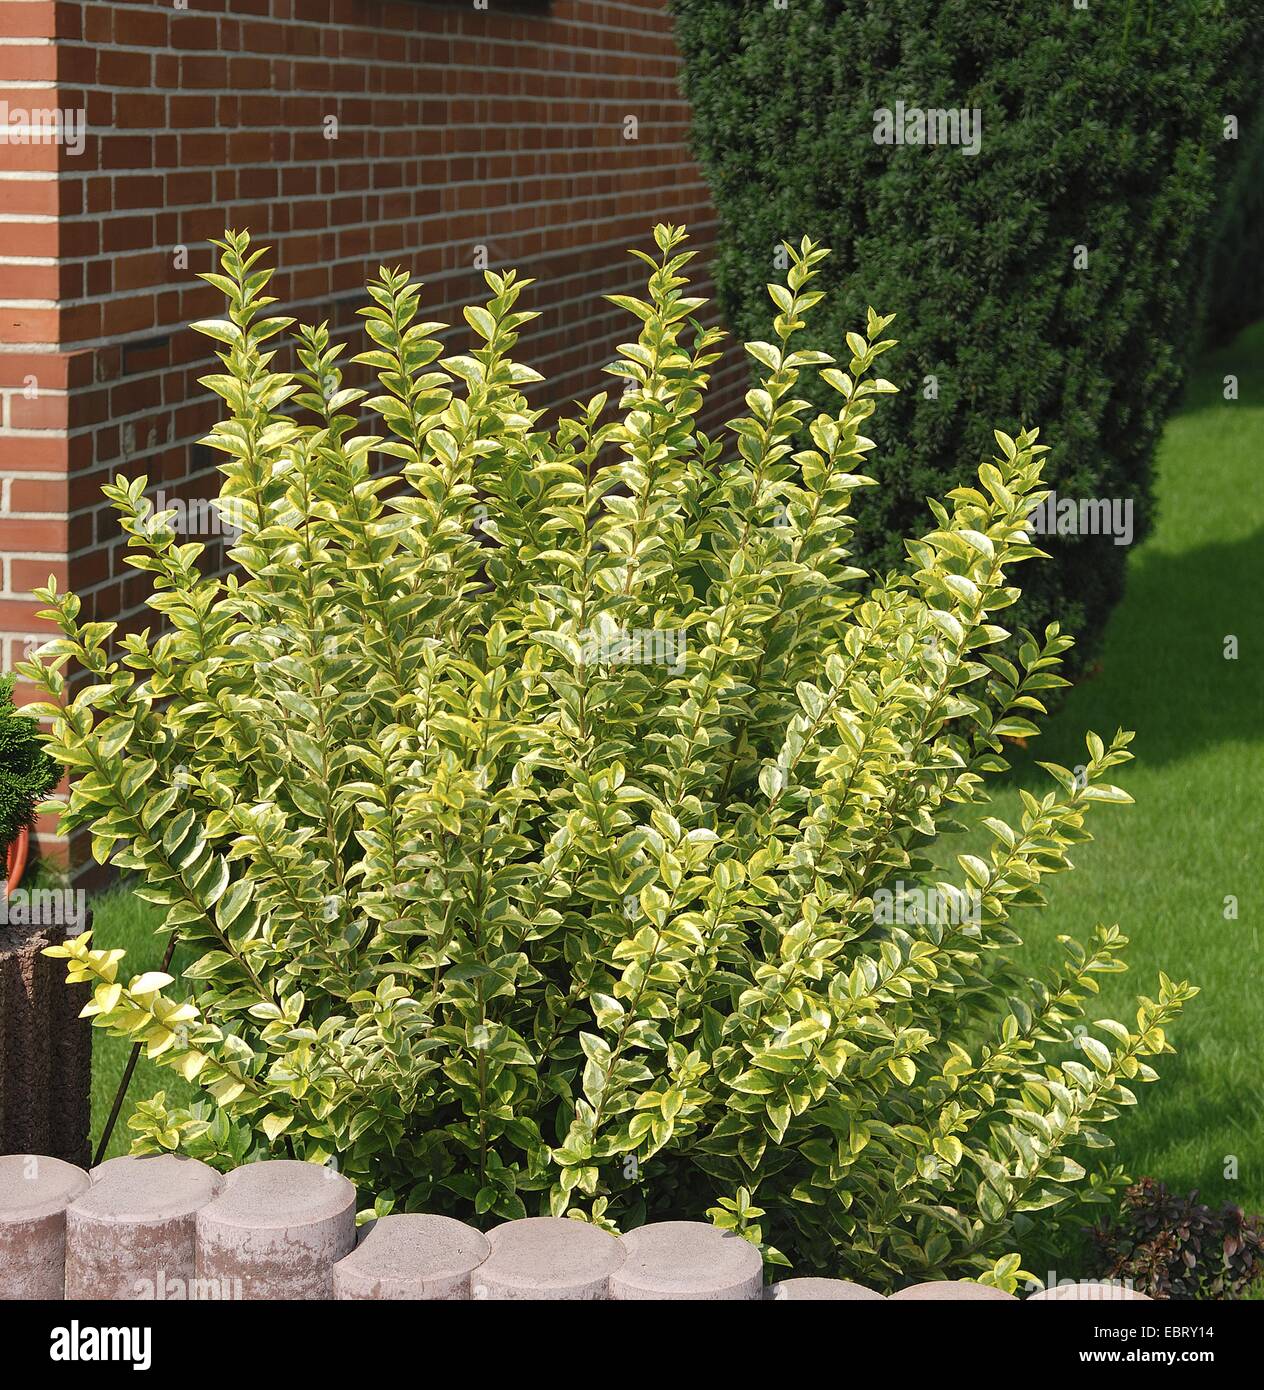 California ligustro (Ligustrum ovalifolium 'Aureum', Ligustrum ovalifolium Aureum), cultivar Aureum en un patio delantero Foto de stock